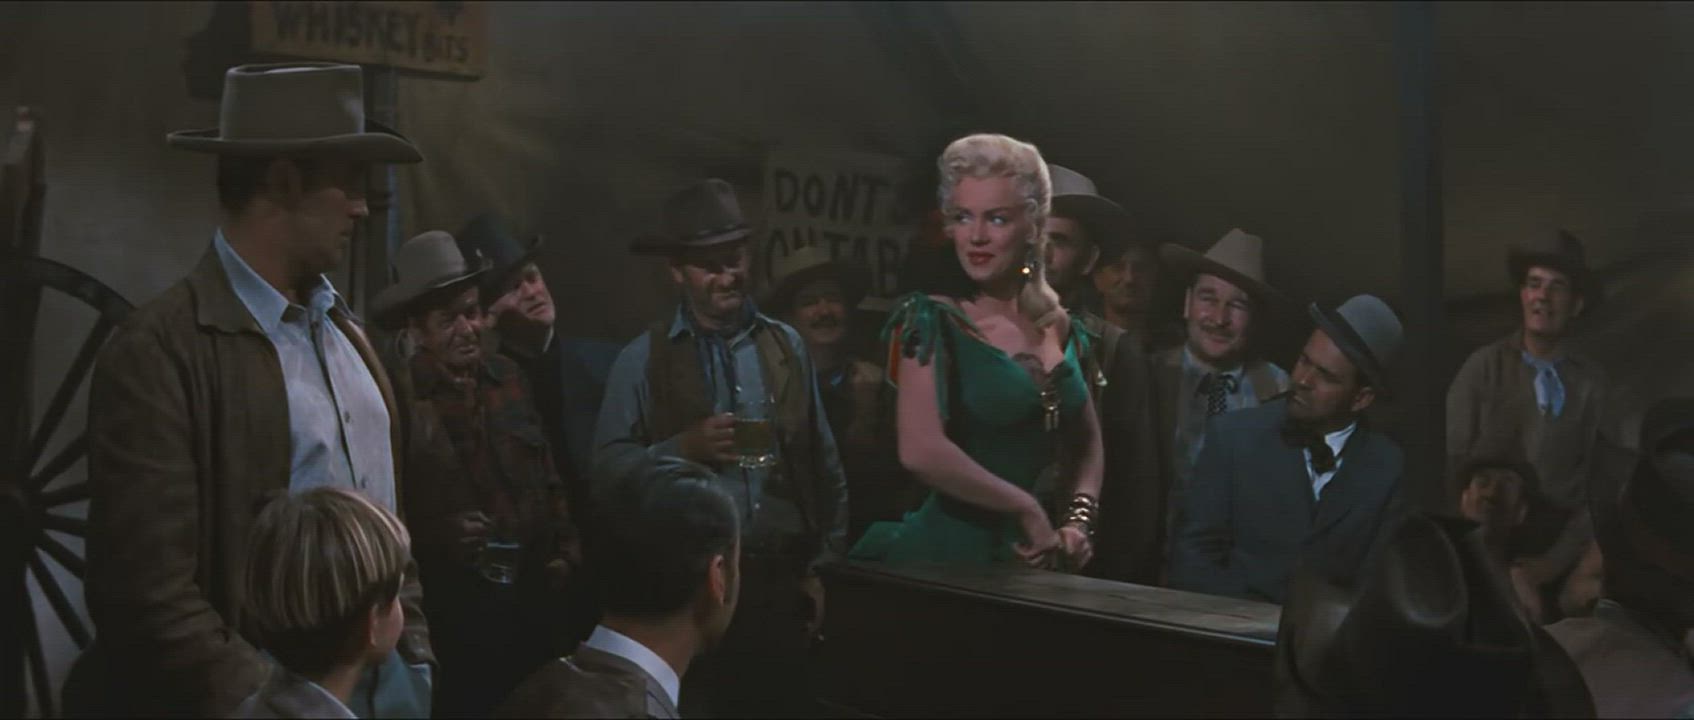 Marilyn Monroe in River of No Return (1954)